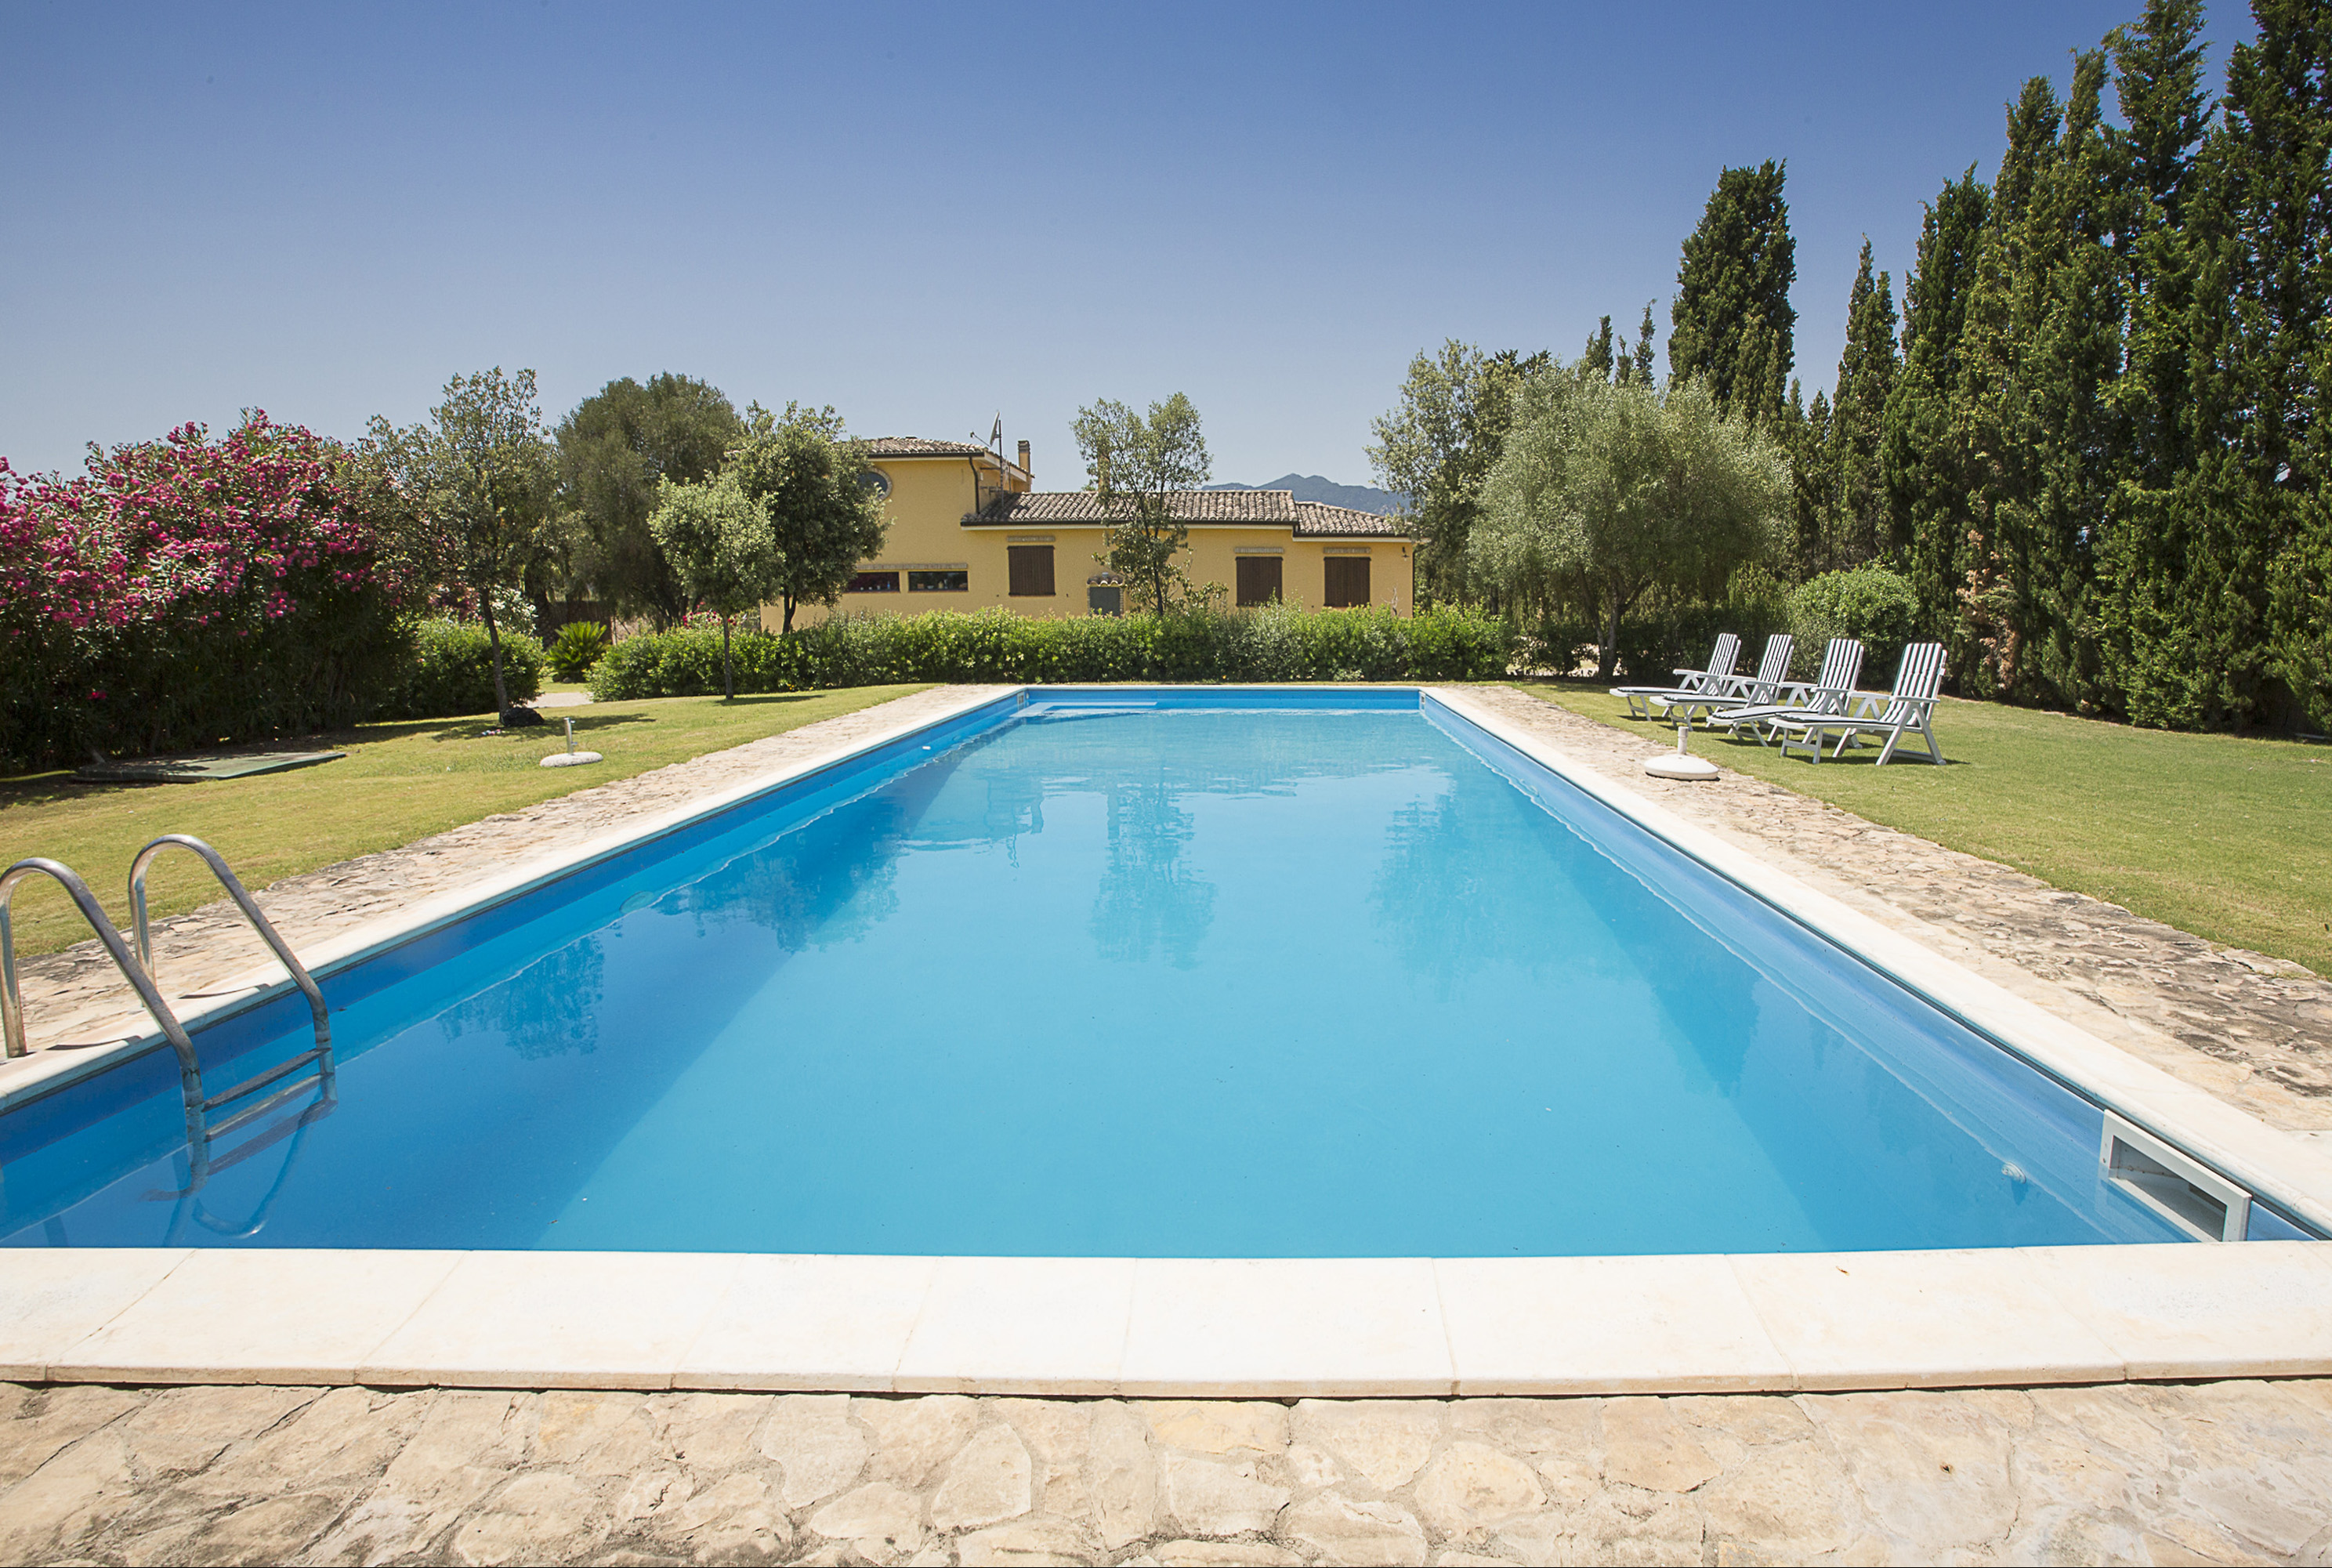 Se vende villa in zona tranquila Villa San Pietro Sardegna